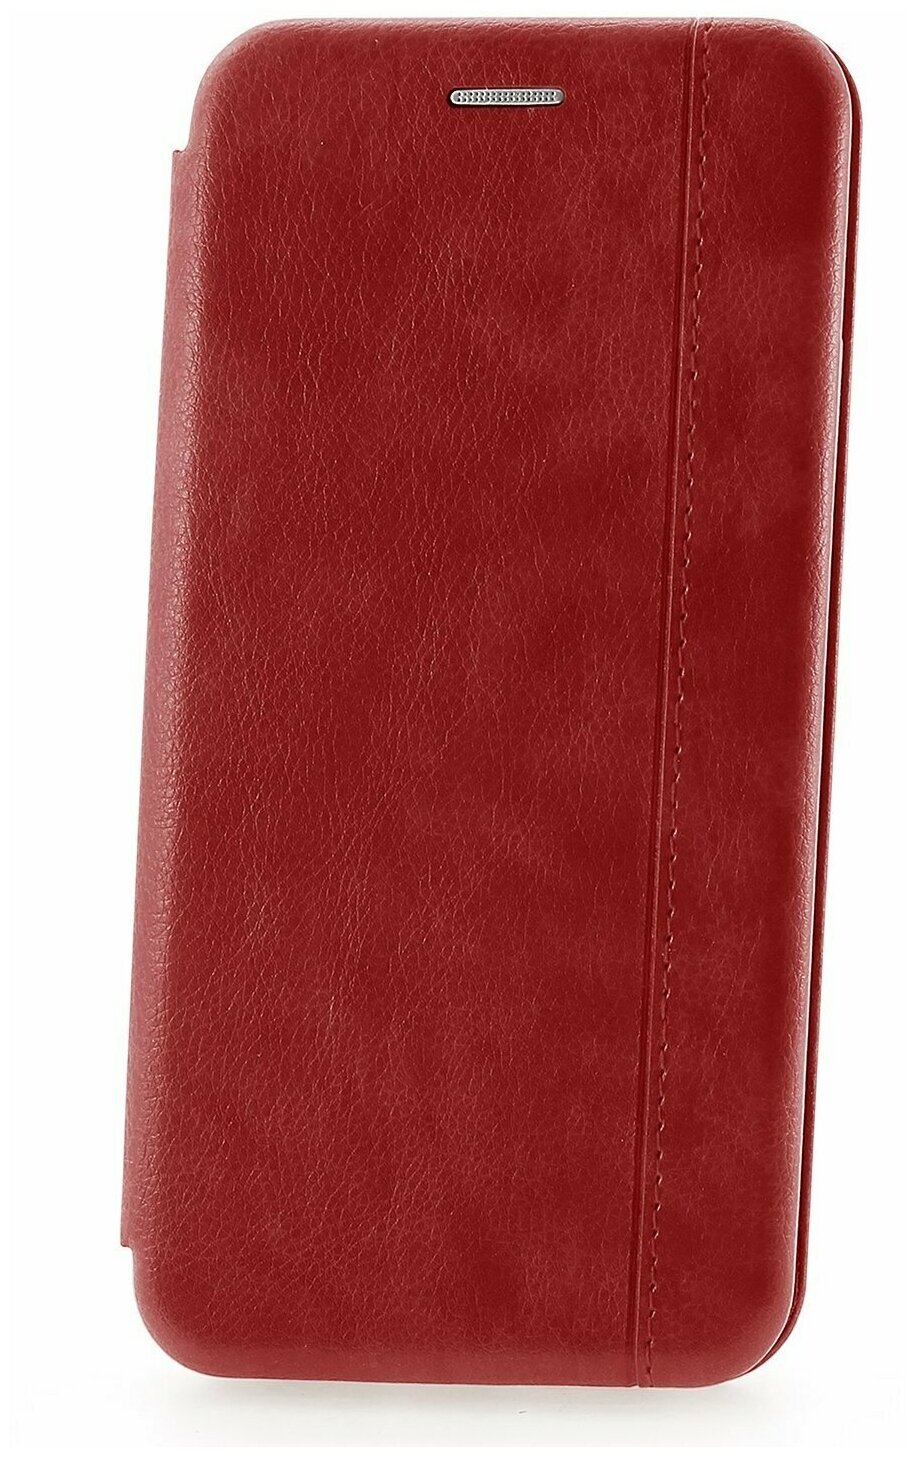 Чехол книжка Samsung M51 Derbi Open Book-1 красный, противоударный откидной чехол портмоне с подставкой, кейс с защитой экрана и отделением для карт